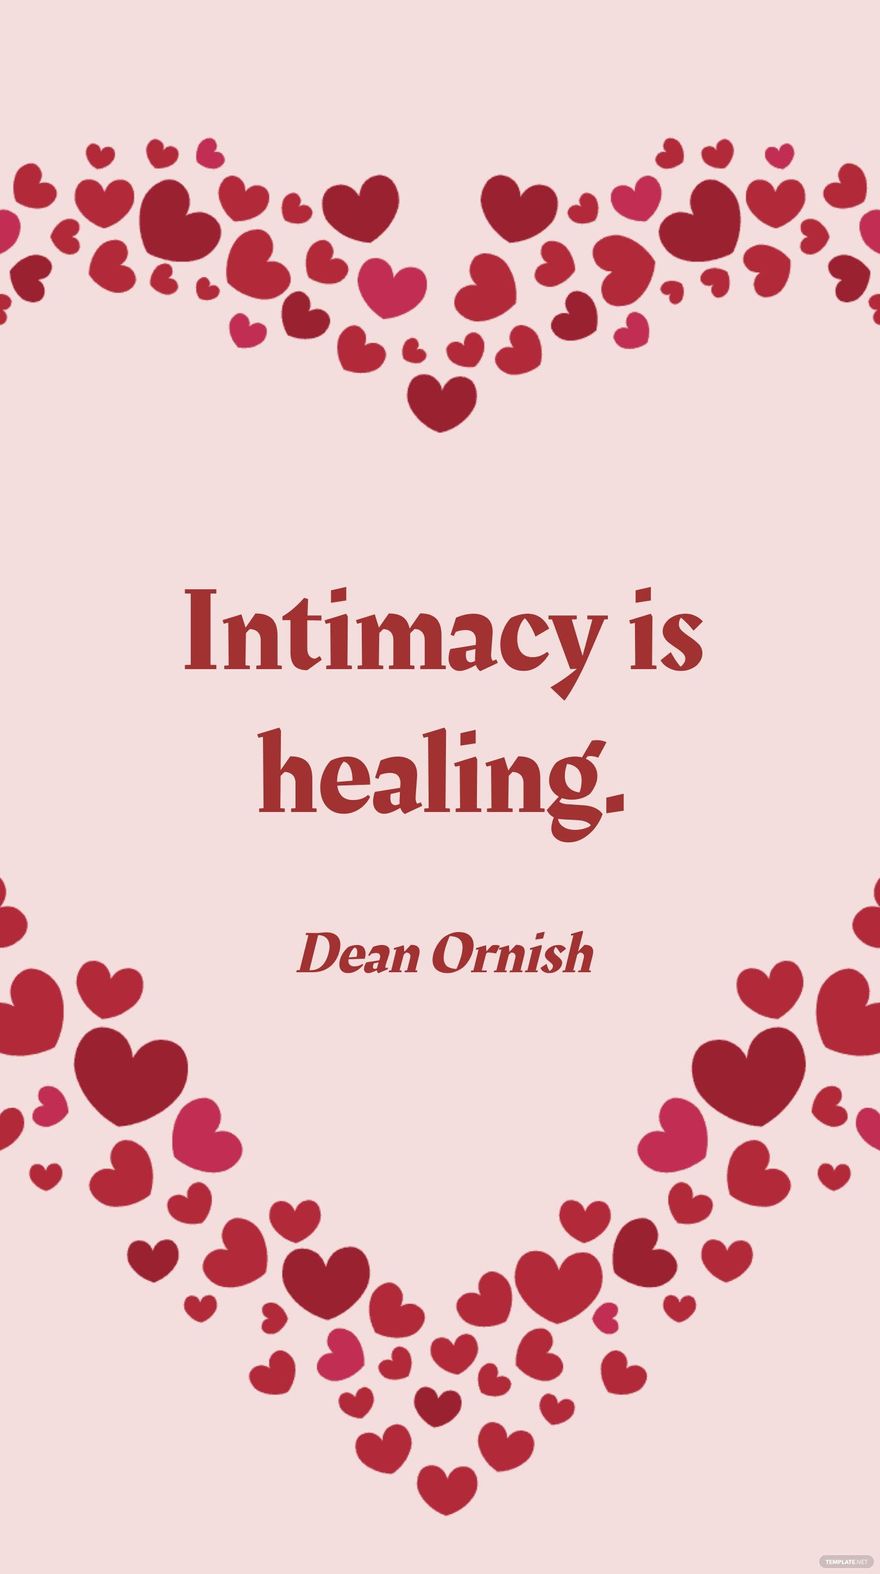 Free Dean Ornish - Intimacy is healing. in JPG